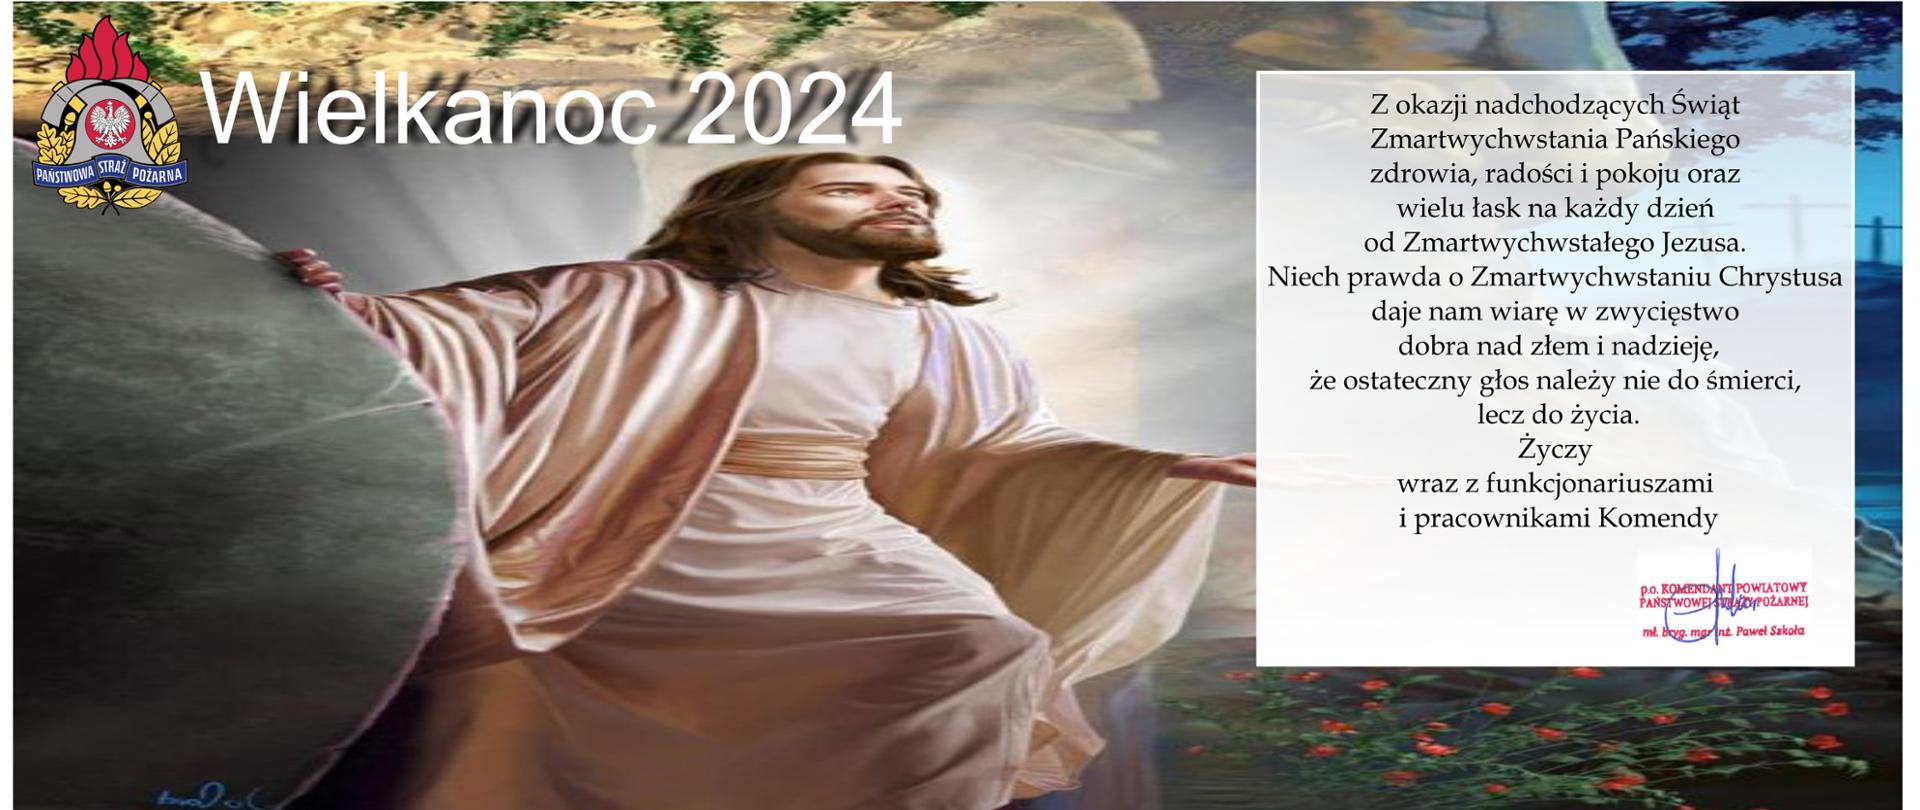 Kartka świąteczna z życzeniami Wielkanocnymi 2024 z motywem religijnym